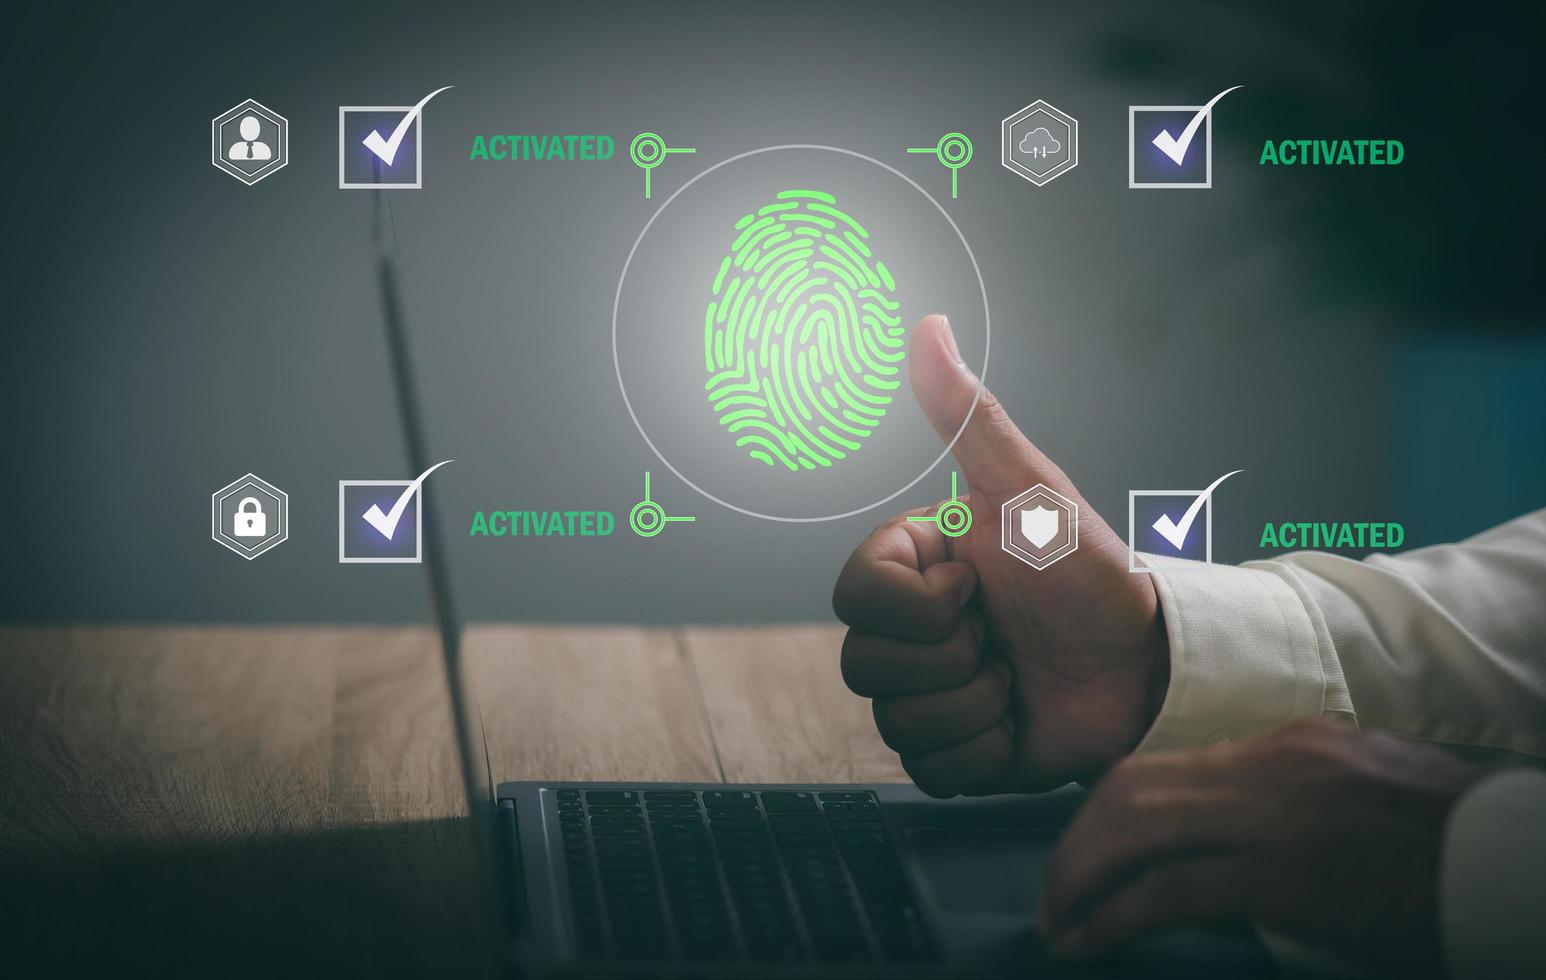 biometriskt fingeravtryck biometrisk teknologi låser upp programmeraren för att få tillgång till sekretessinformation, innovativt pekskärmsautentiseringskoncept. , säkerhetshantering och digitalt lösenordsskydd foto